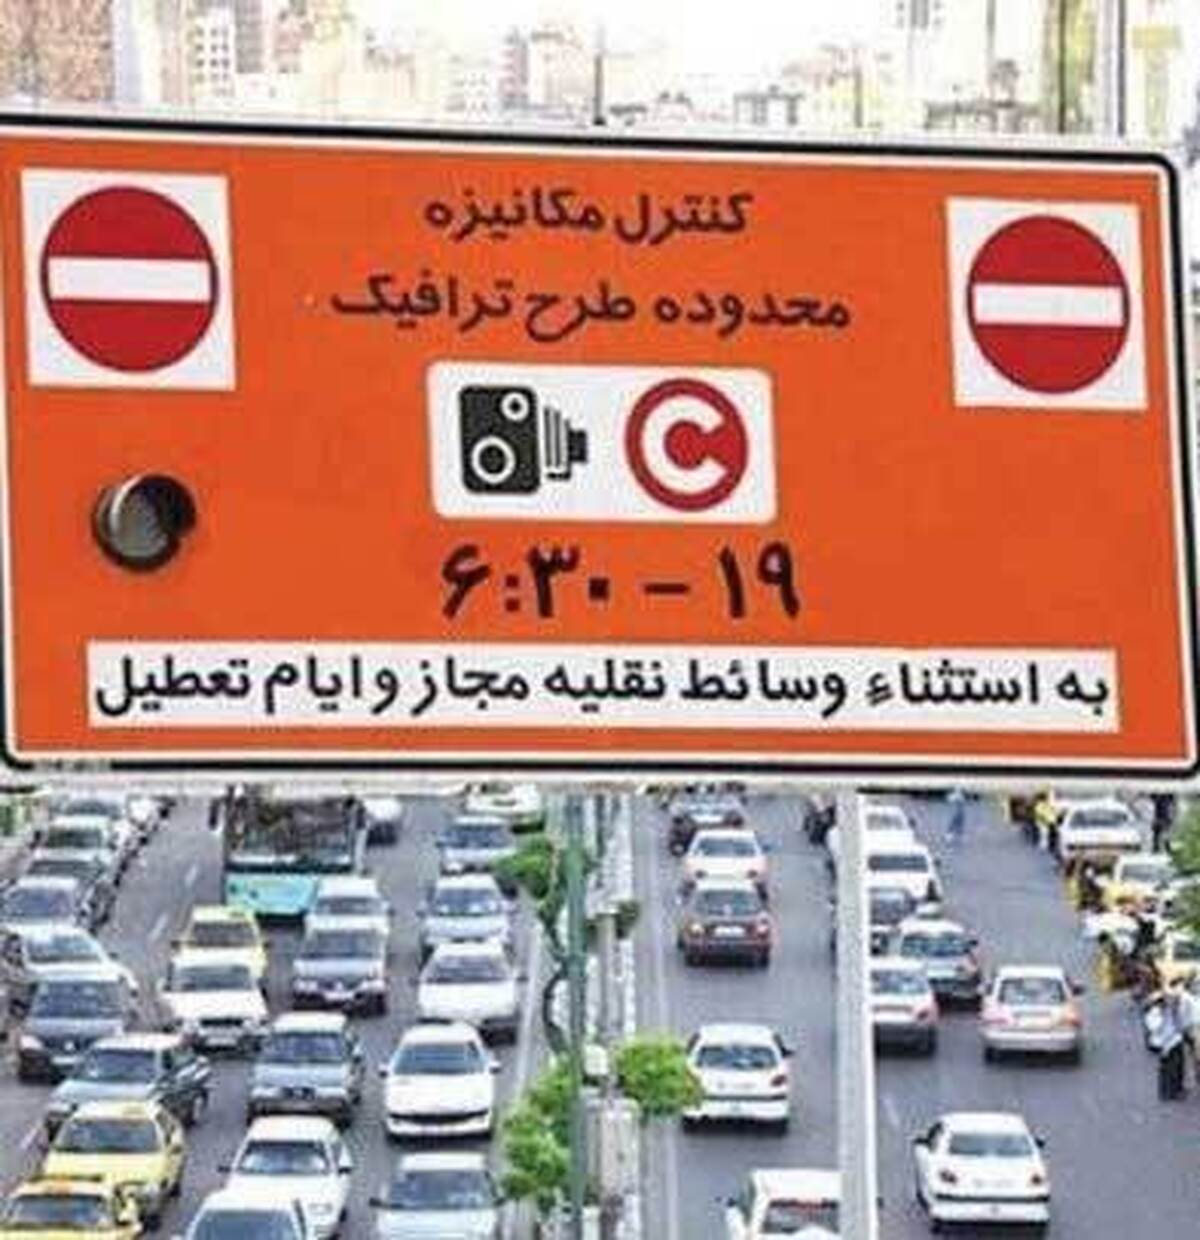 فروش طرح ترافيك در روزهاي آلوده هواي تهران ممنوع شد